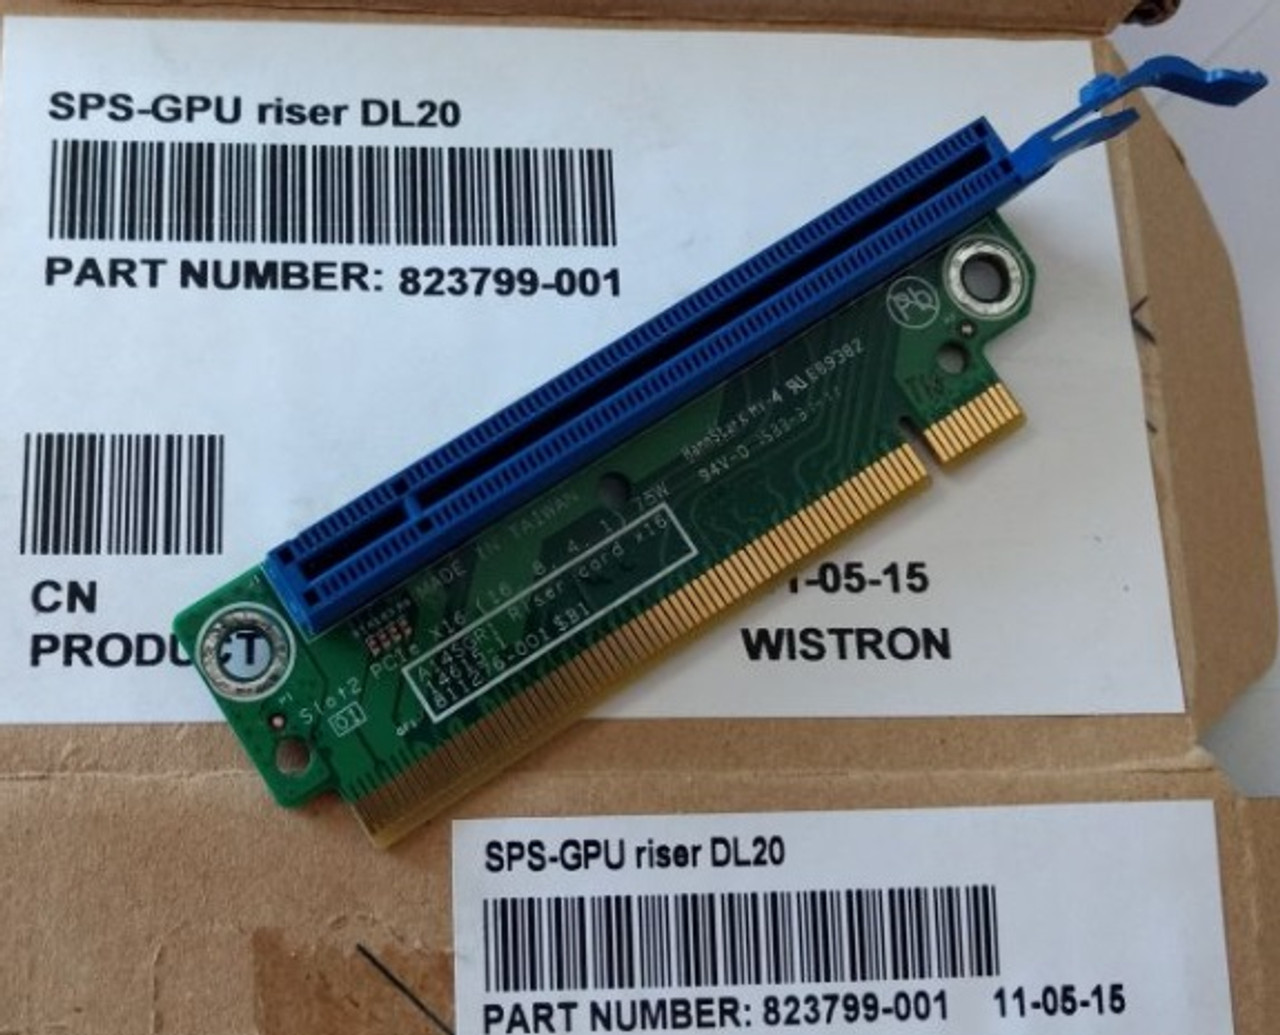 SPS-GPU riser DL20 - 823799-001